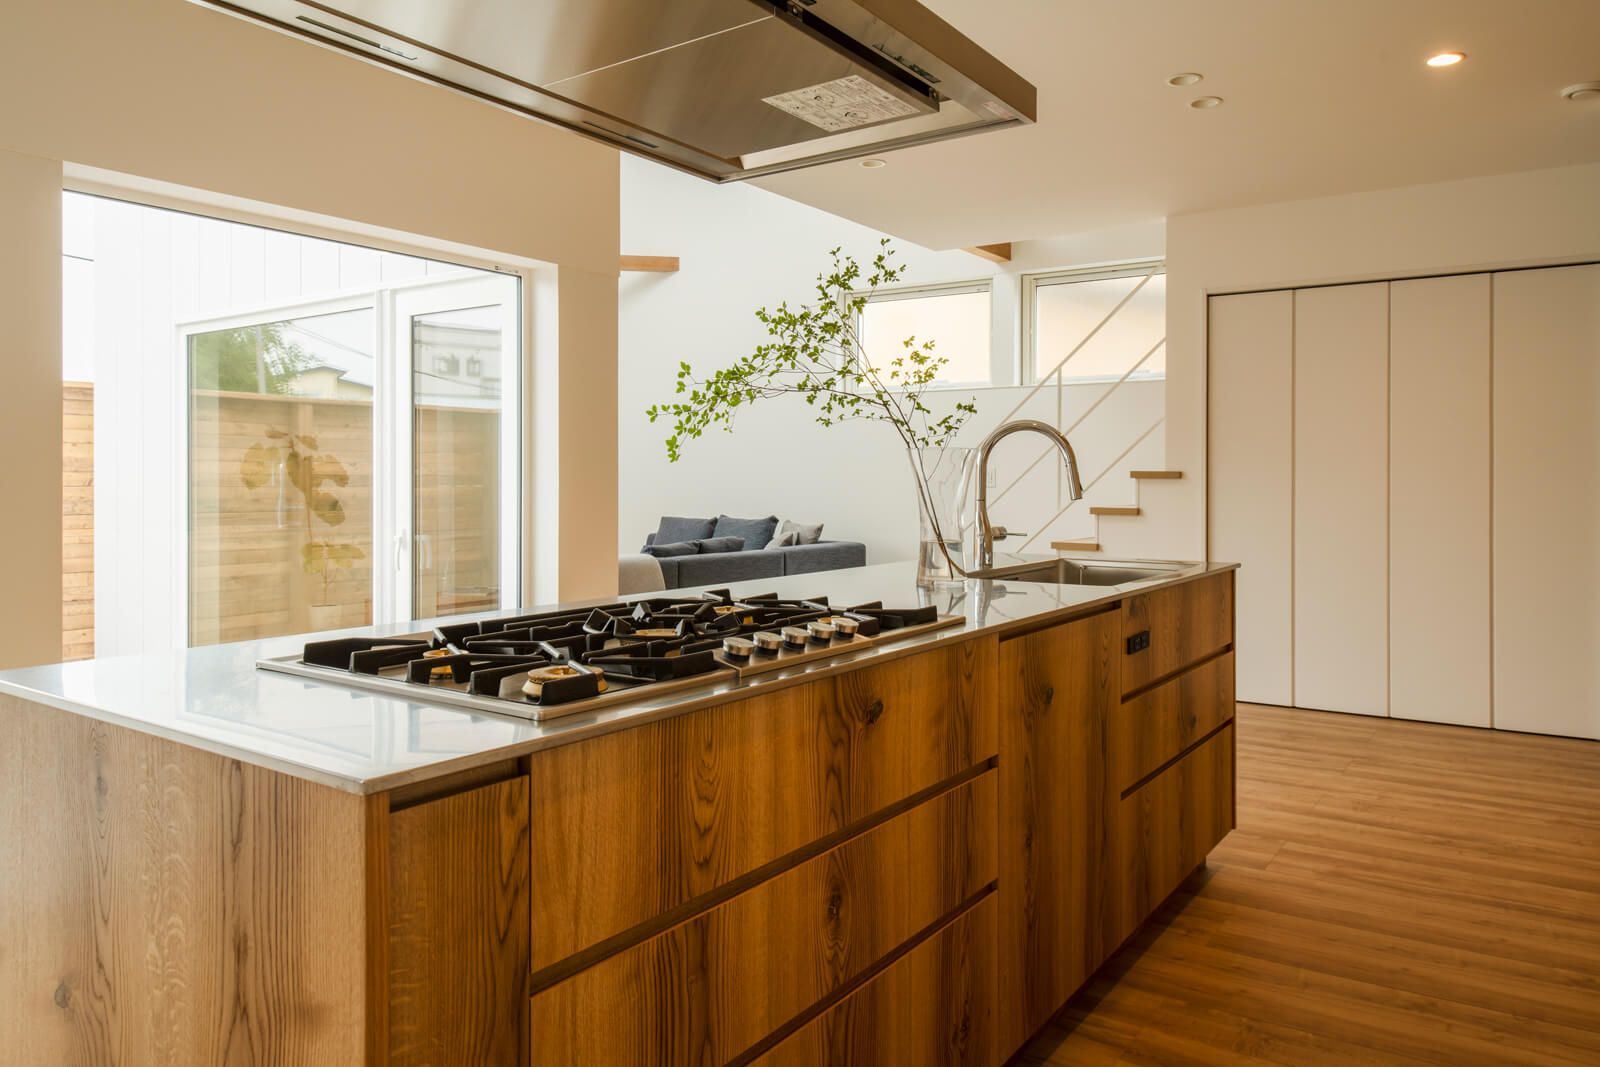 オールステンレスの天板と木の面材が美しく調和しているフルオープンのアイランドキッチンと、斜めにずらして配置したリビングは程よい距離感